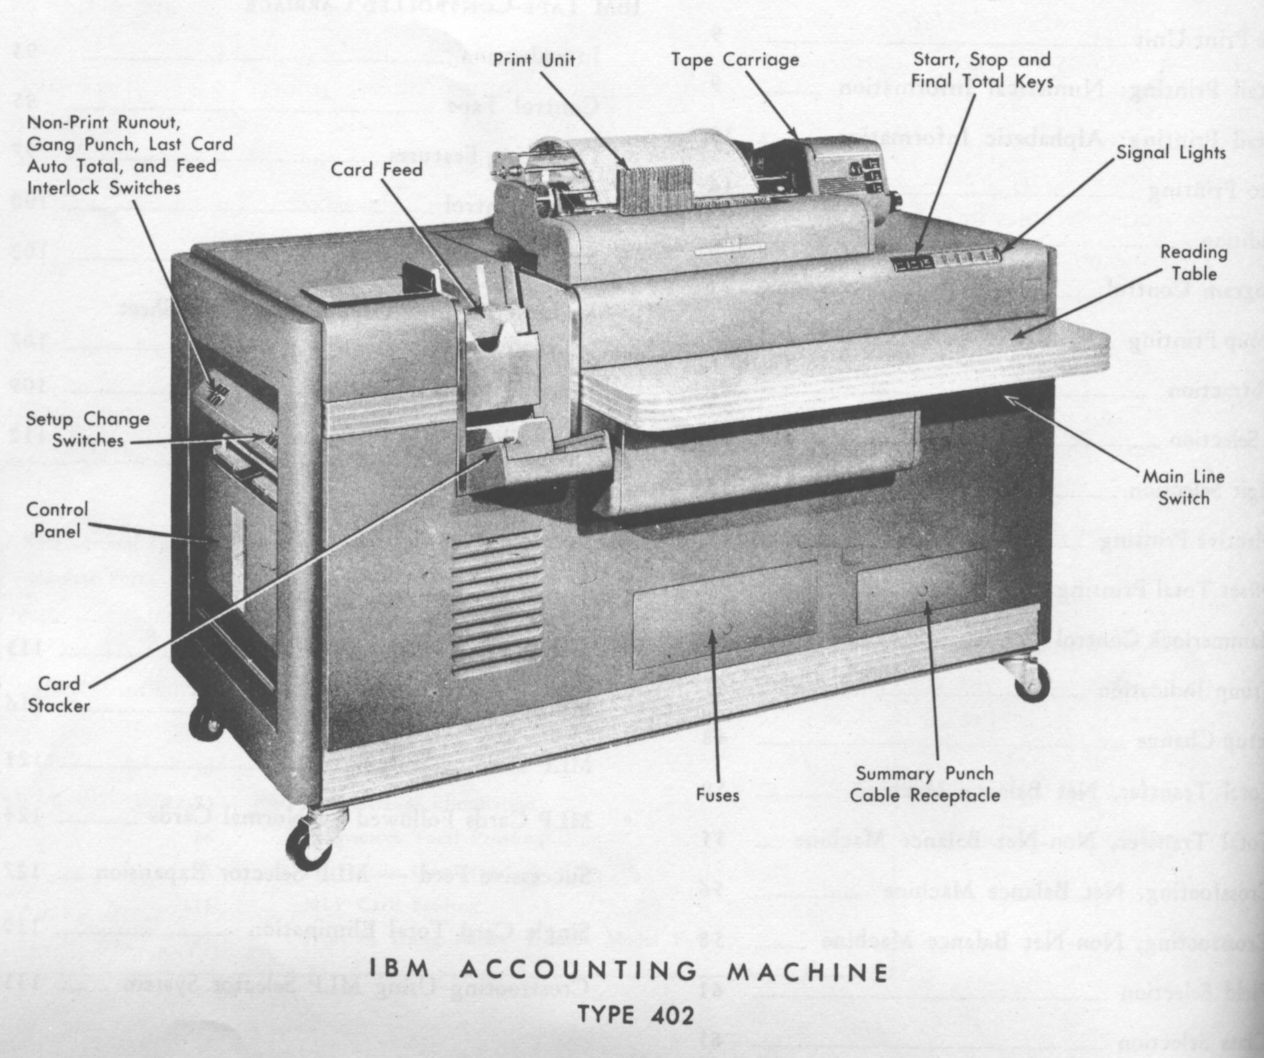 IBM 402 accounting machine